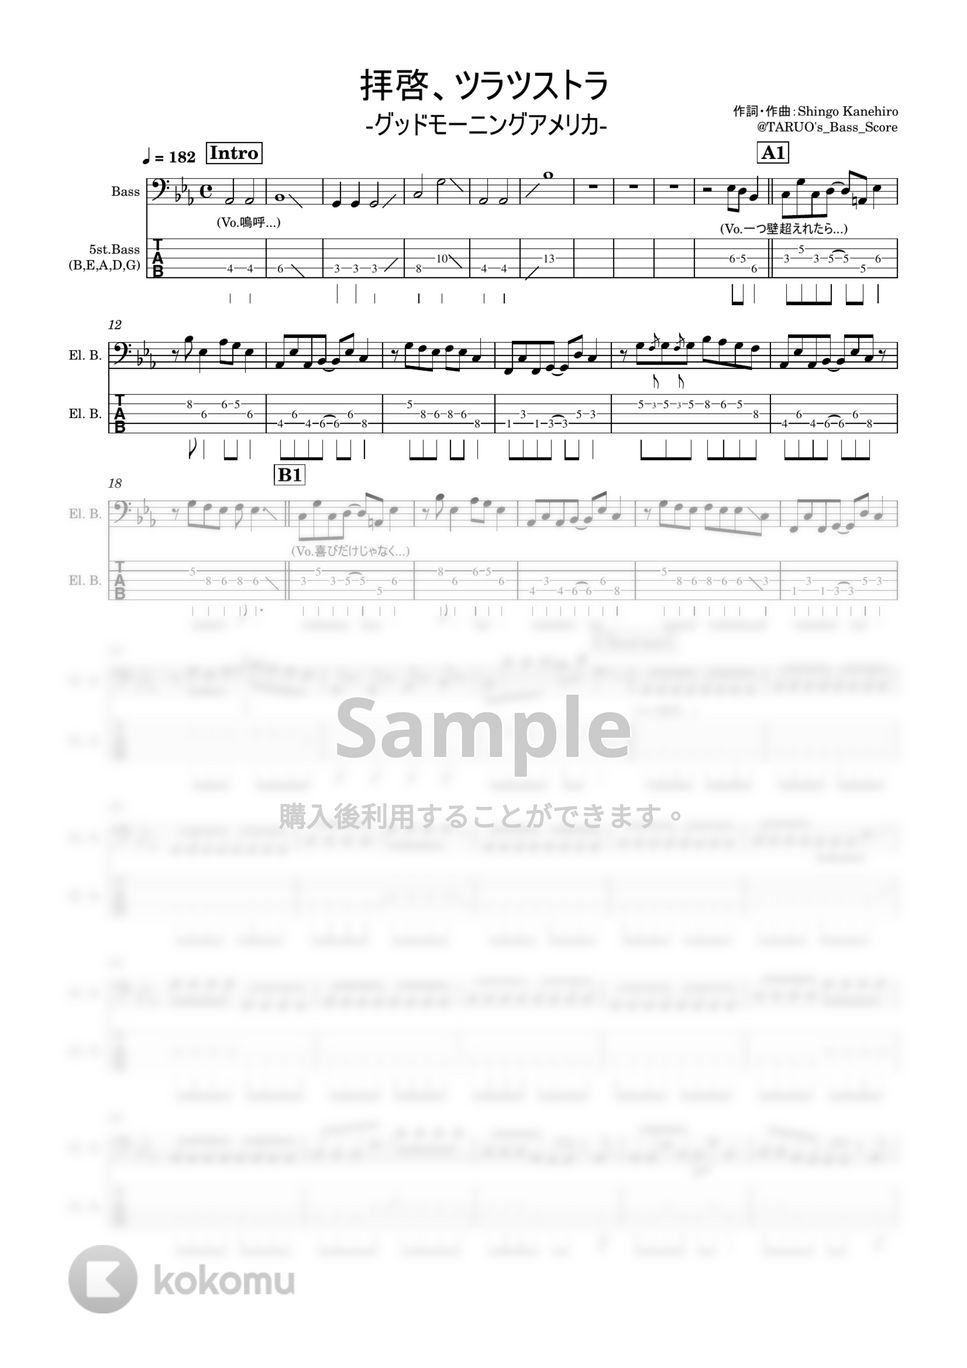 グッドモーニングアメリカ - 拝啓、ツラツストラ(5弦) (ベース/グッドモーニングアメリカ/たなしん/ドラゴンボール) by TAUO's_Bass_Score